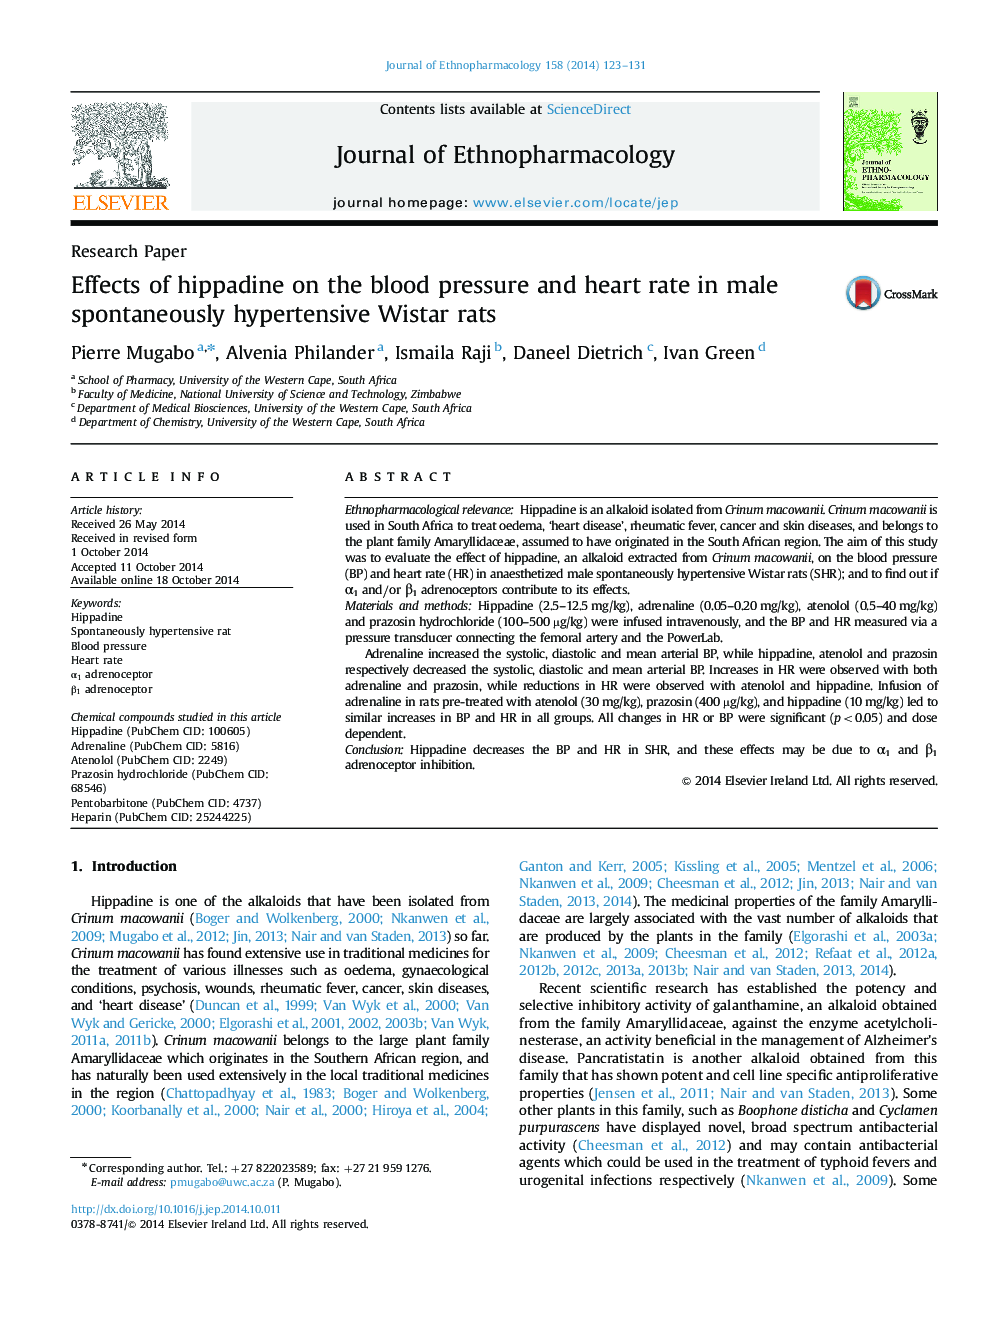 مقاله پژوهشی اثرات هیپاتان بر فشار خون و ضربان قلب در موش های صحرایی وحشی رت 